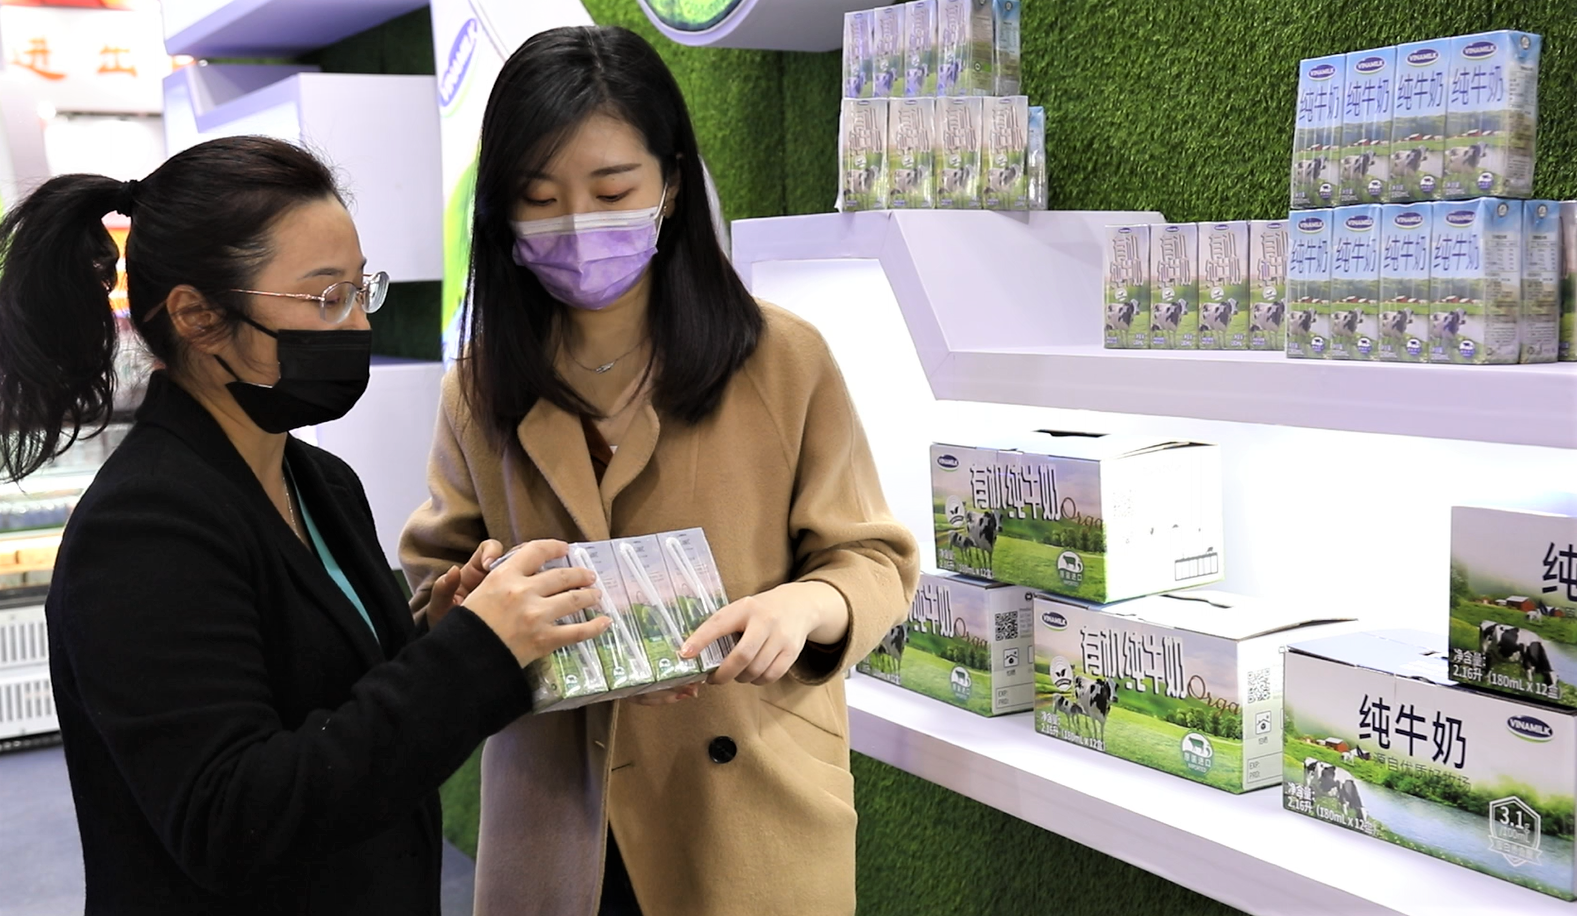 Sữa tươi của Vinamilk chính thức “chào sân” tại triển lãm quốc tế hàng đầu Thượng Hải - Ảnh 3.